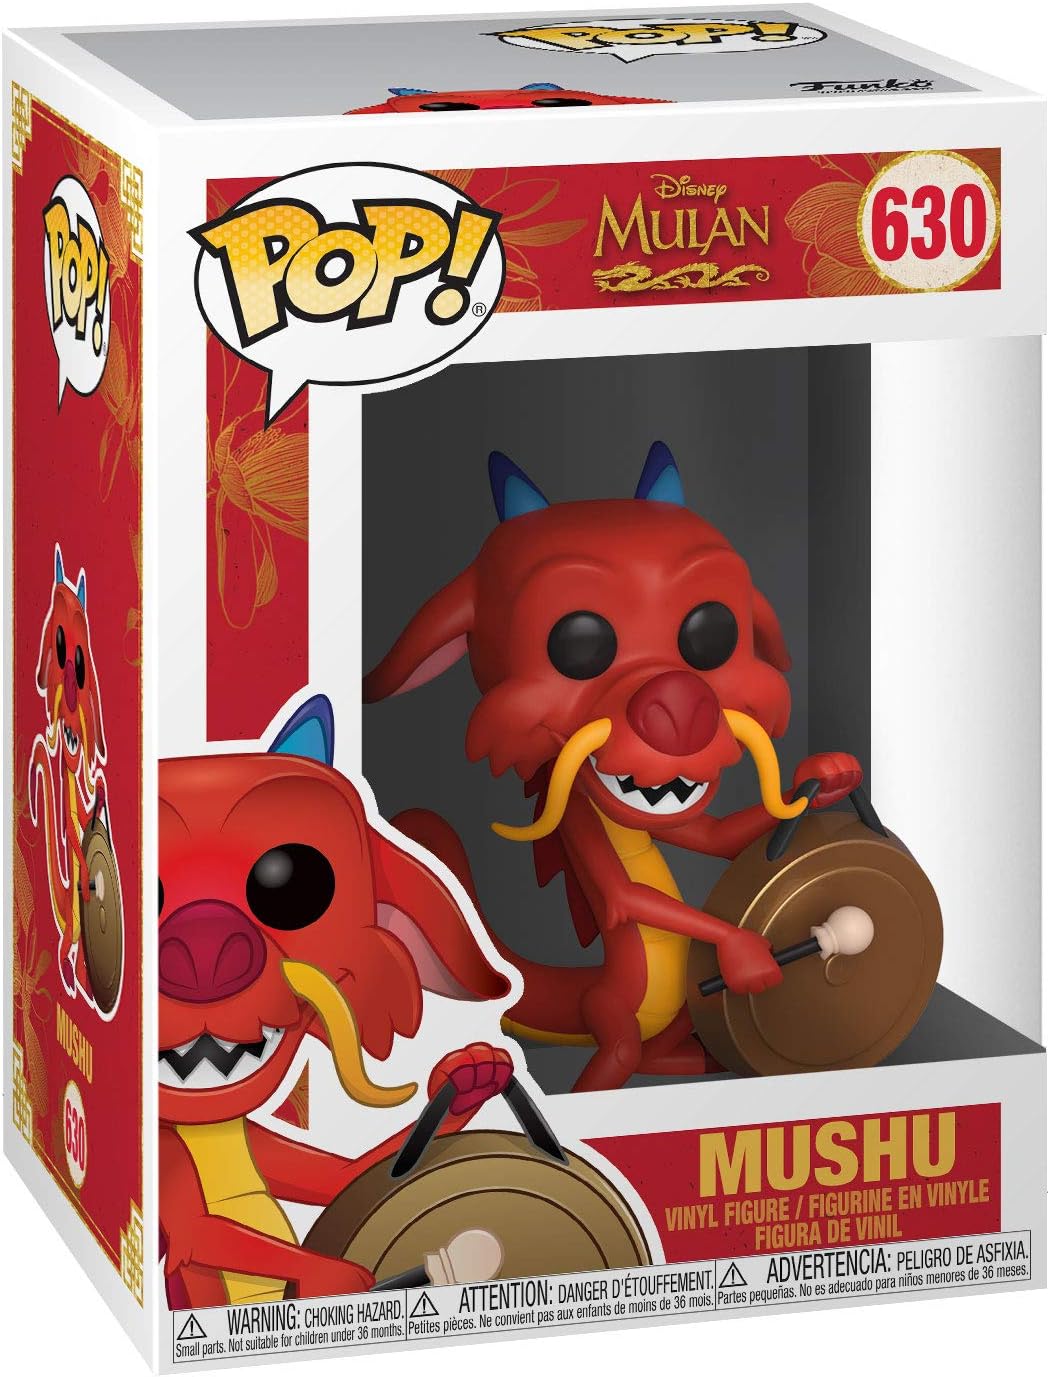 Funko Pop Disney: Mulan - Mushu Con Gong